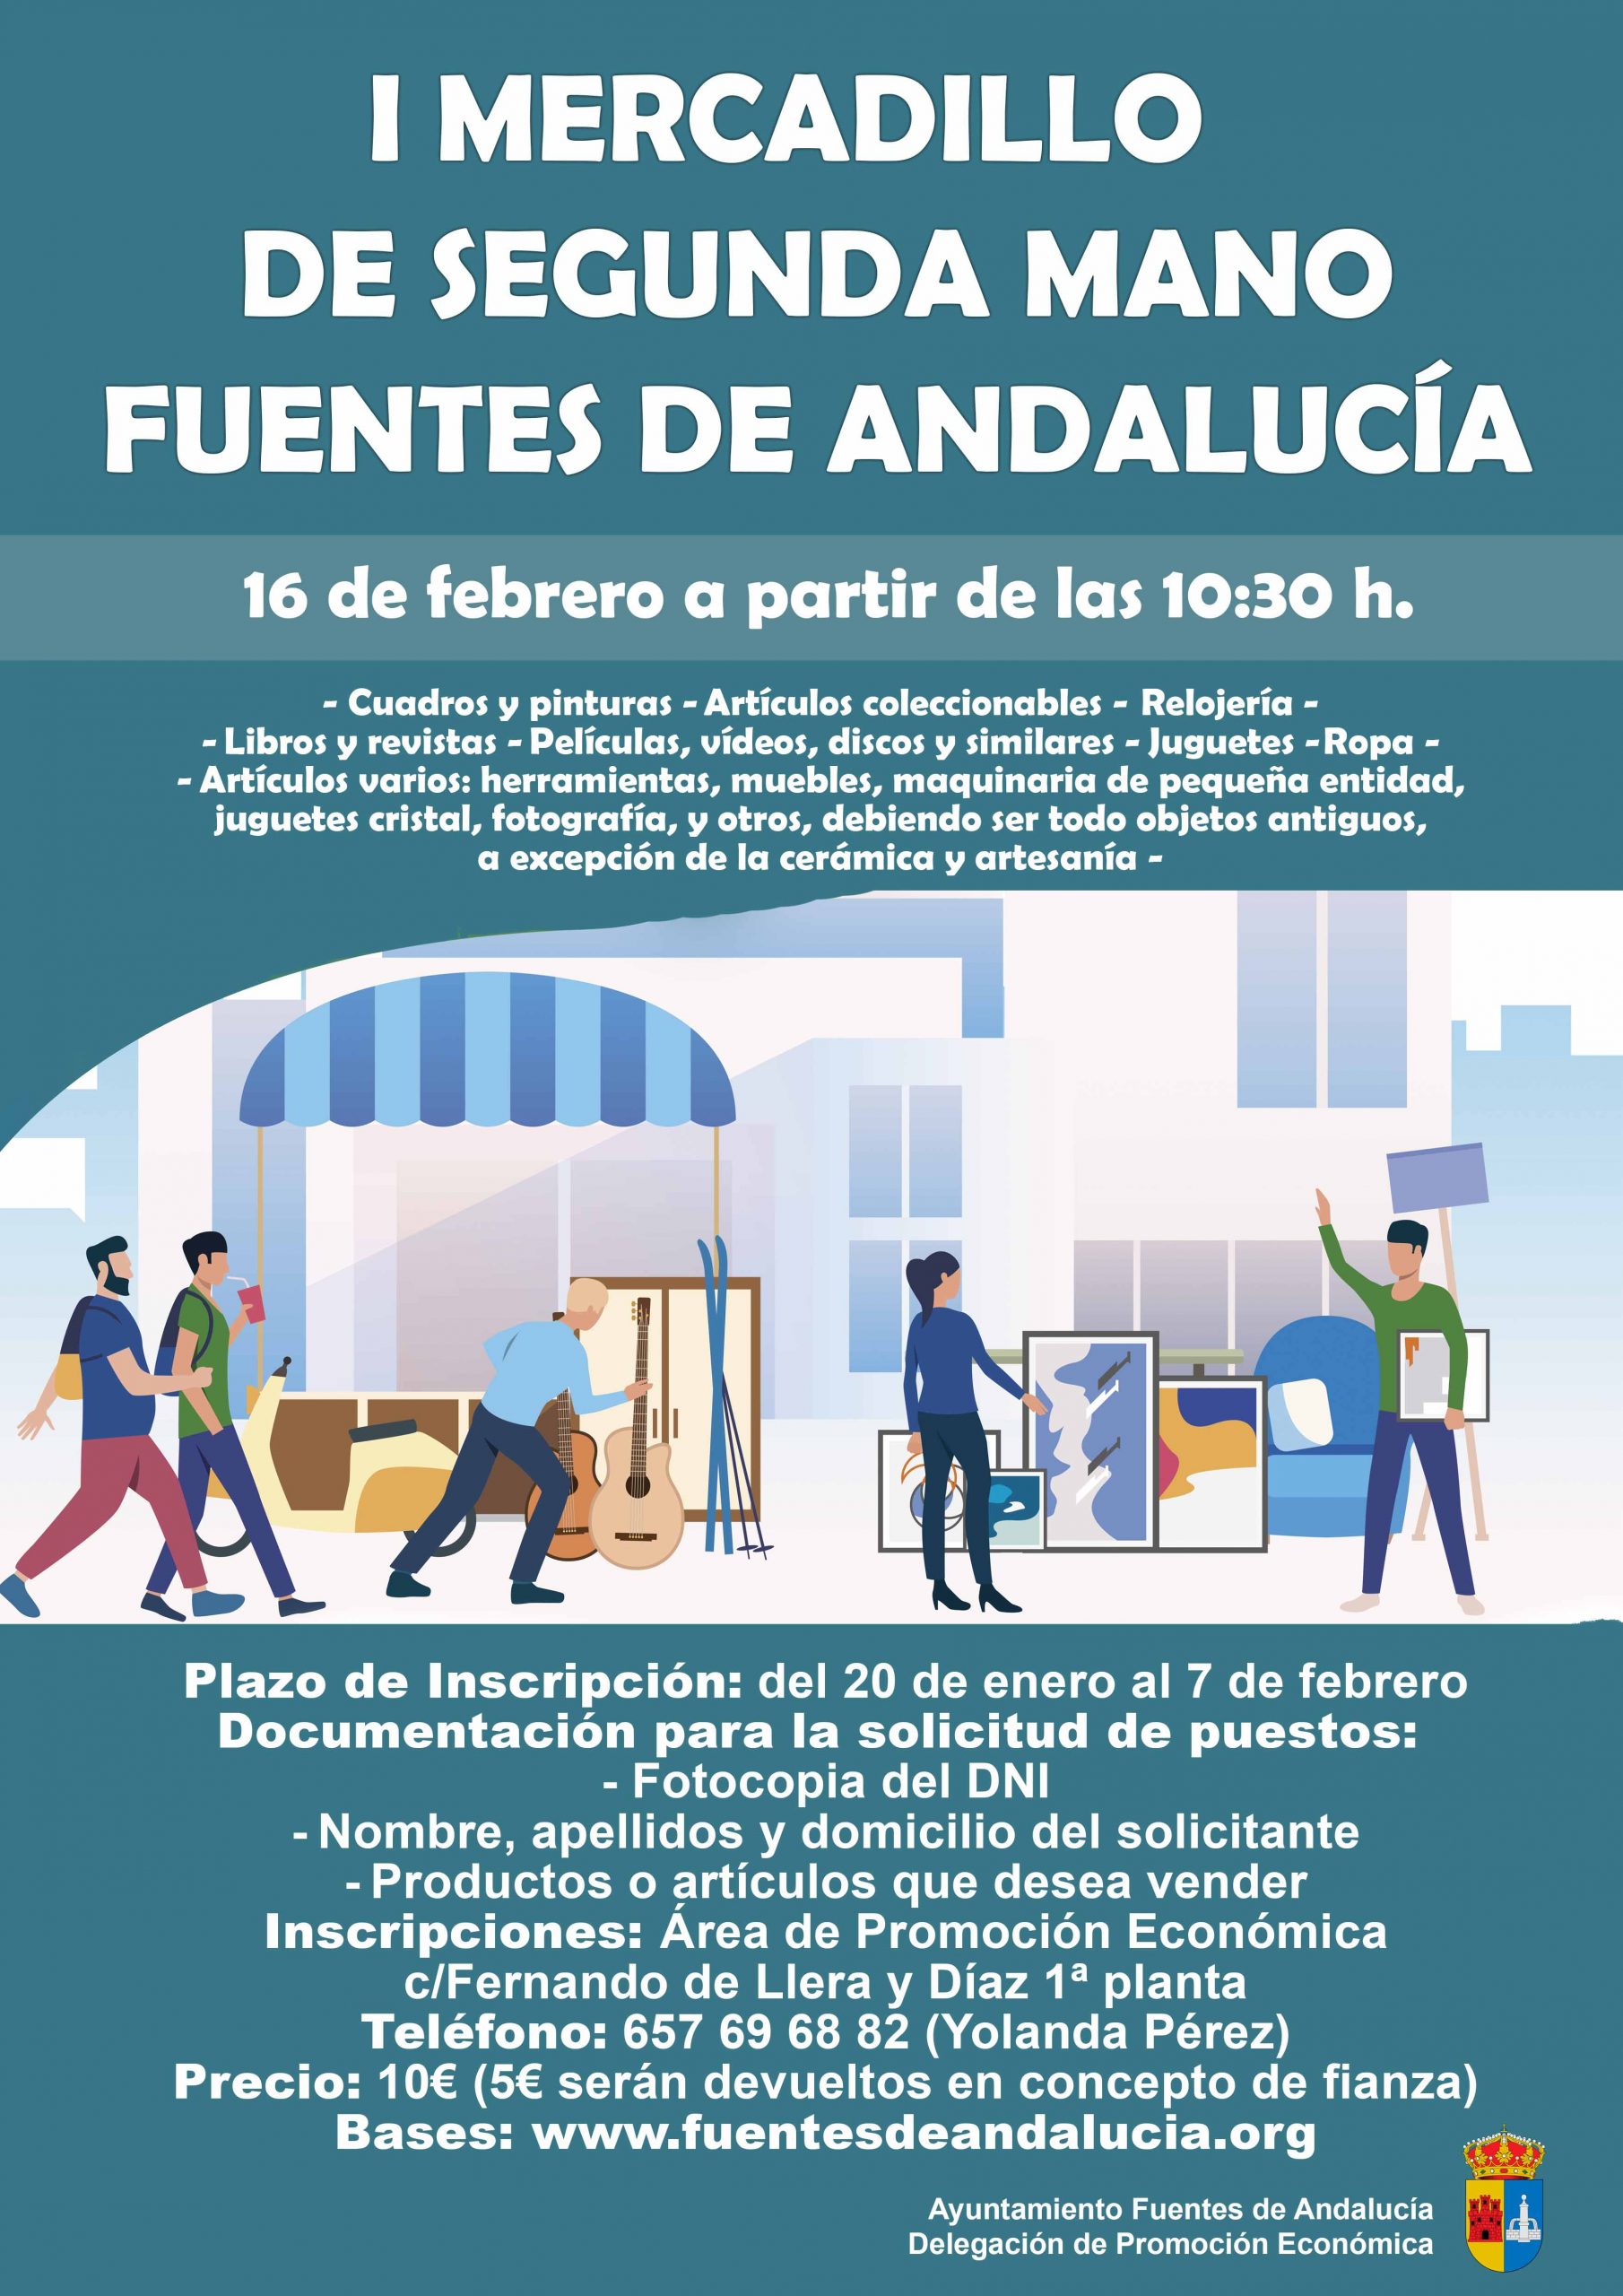 Fuentes de Andalucía celebrará el primer Mercadillo de Segunda Mano -